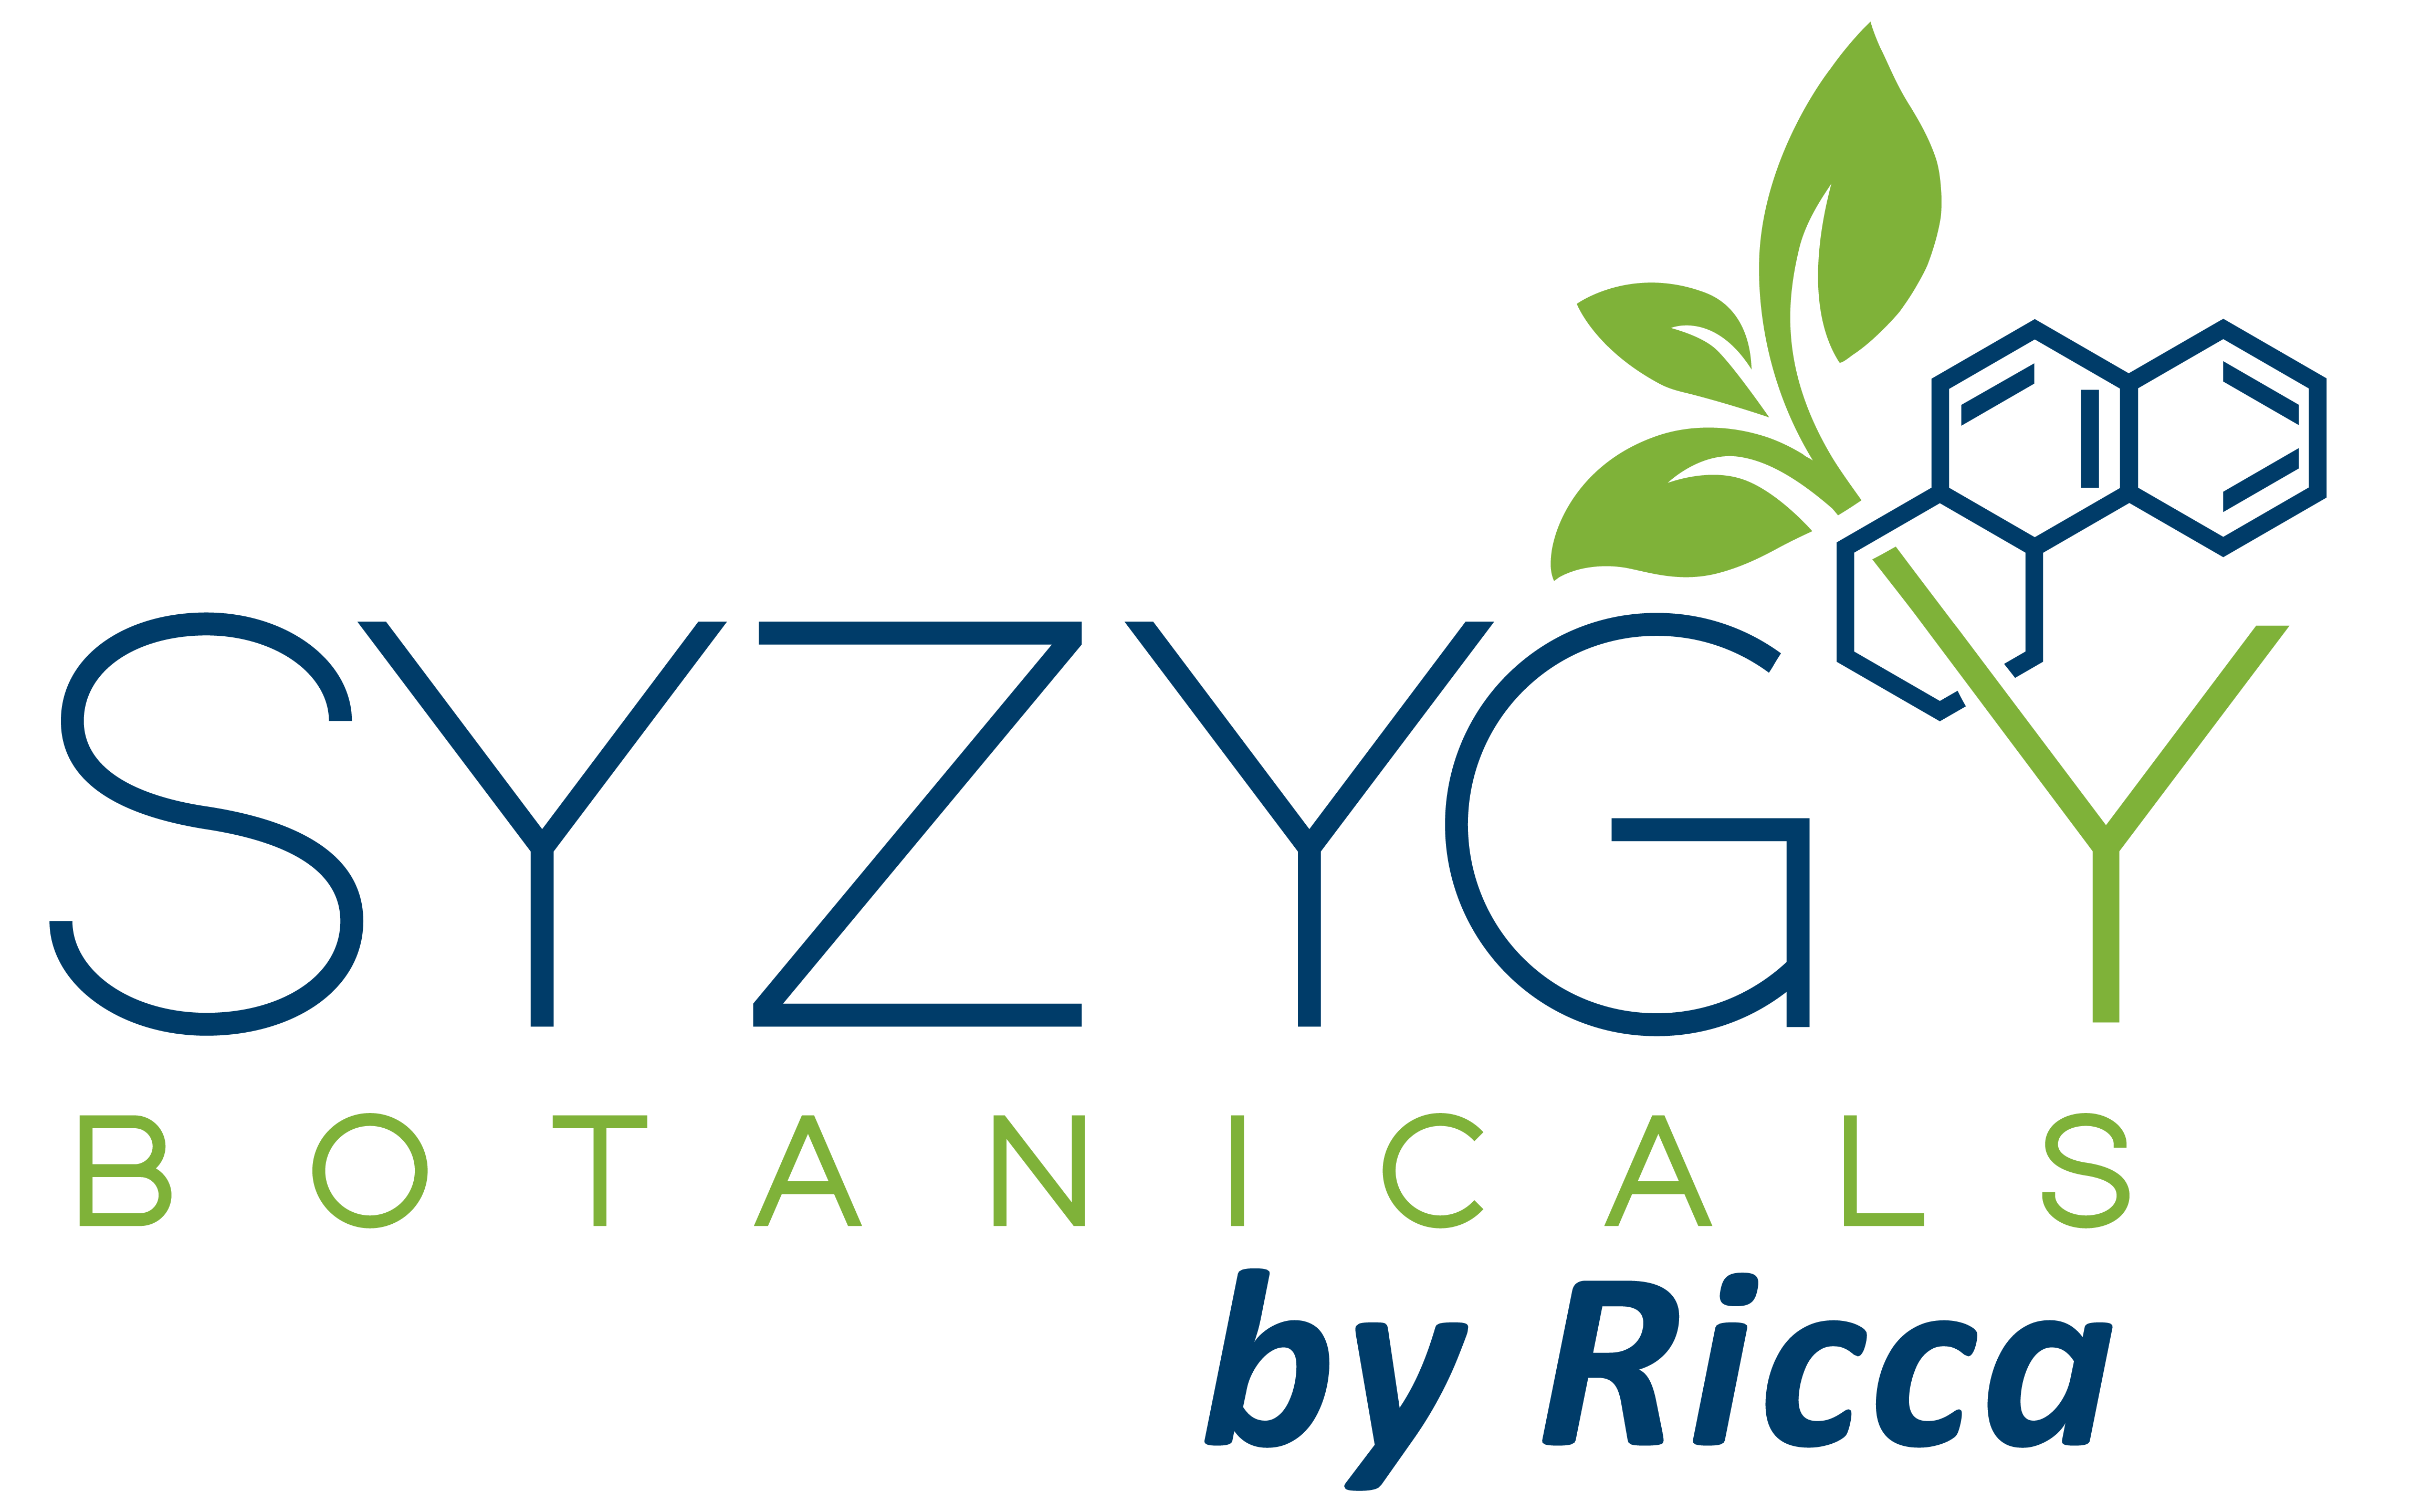 Ricca Chemical Company - SYZYGY Botanicals